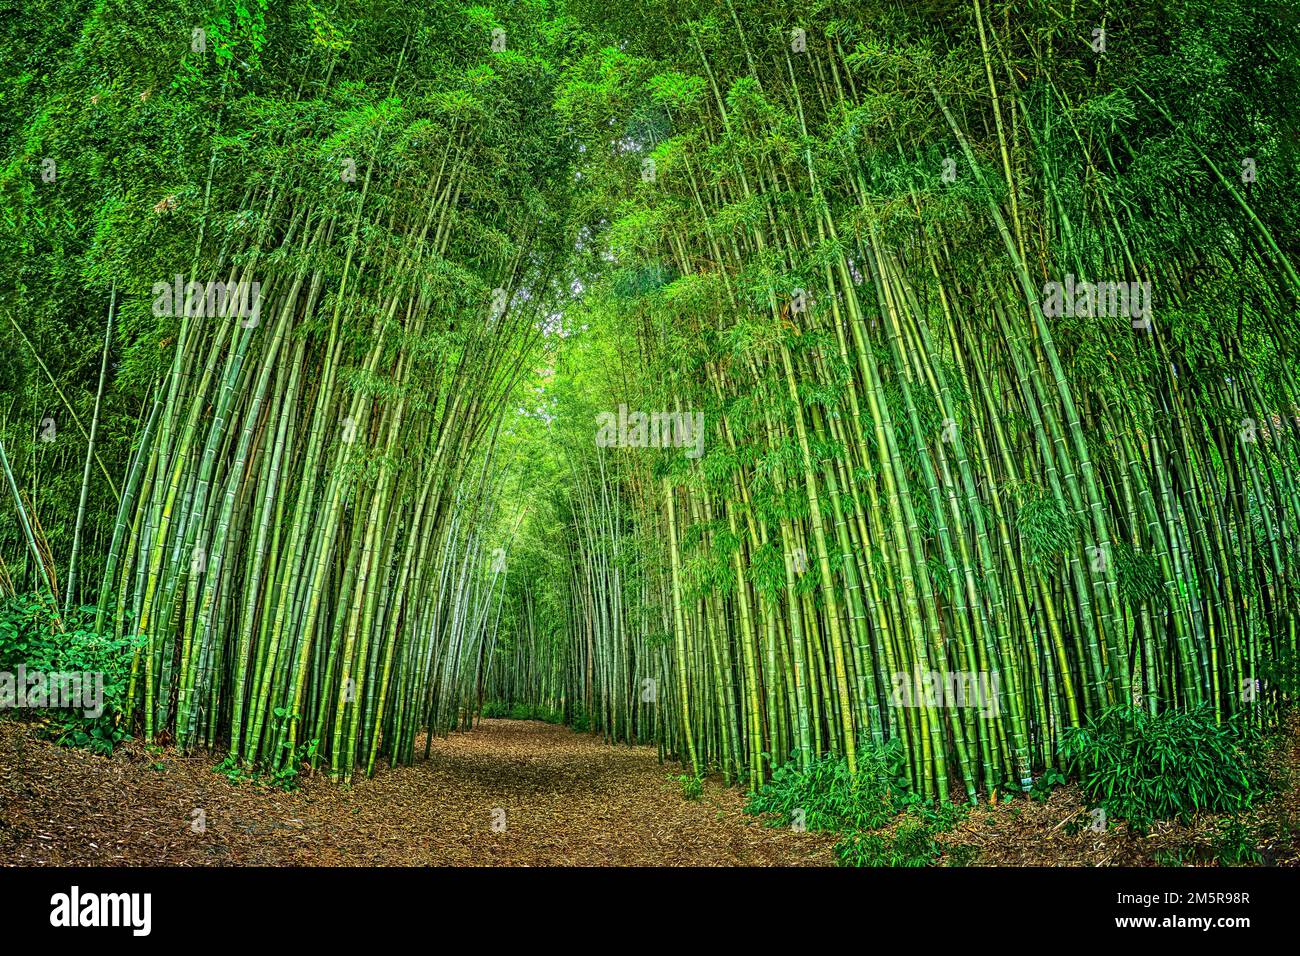 Un chemin entre deux sections d'une vaste et dense forêt de bambou dans un parc public en Caroline du Nord, photographié avec un objectif Nikon Fisheye. Banque D'Images